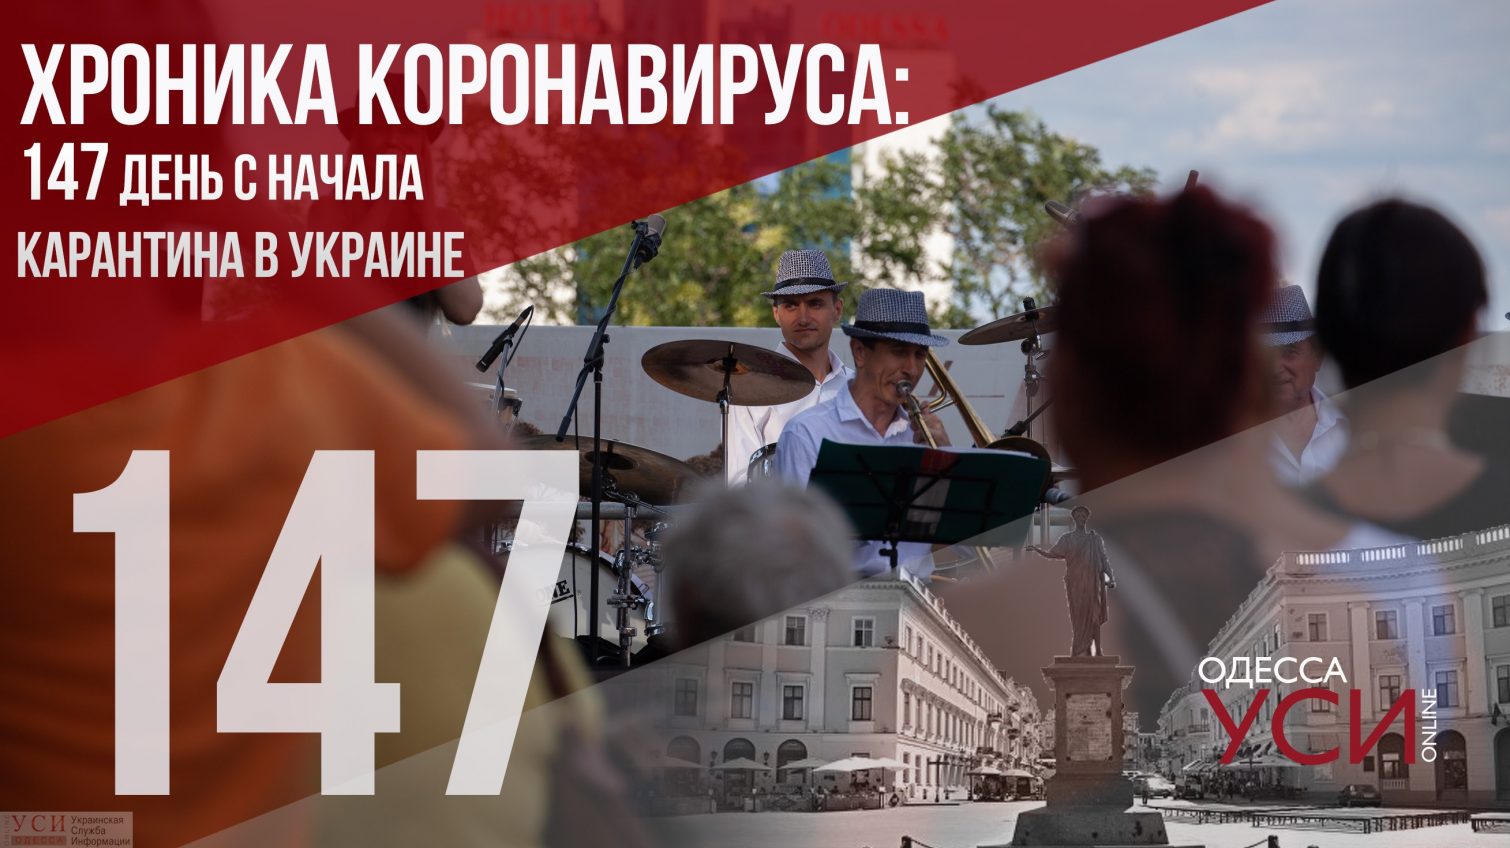 Хроника коронавируса: на 147 день в Одесском регионе – 110 новых больных COVID-19 «фото»